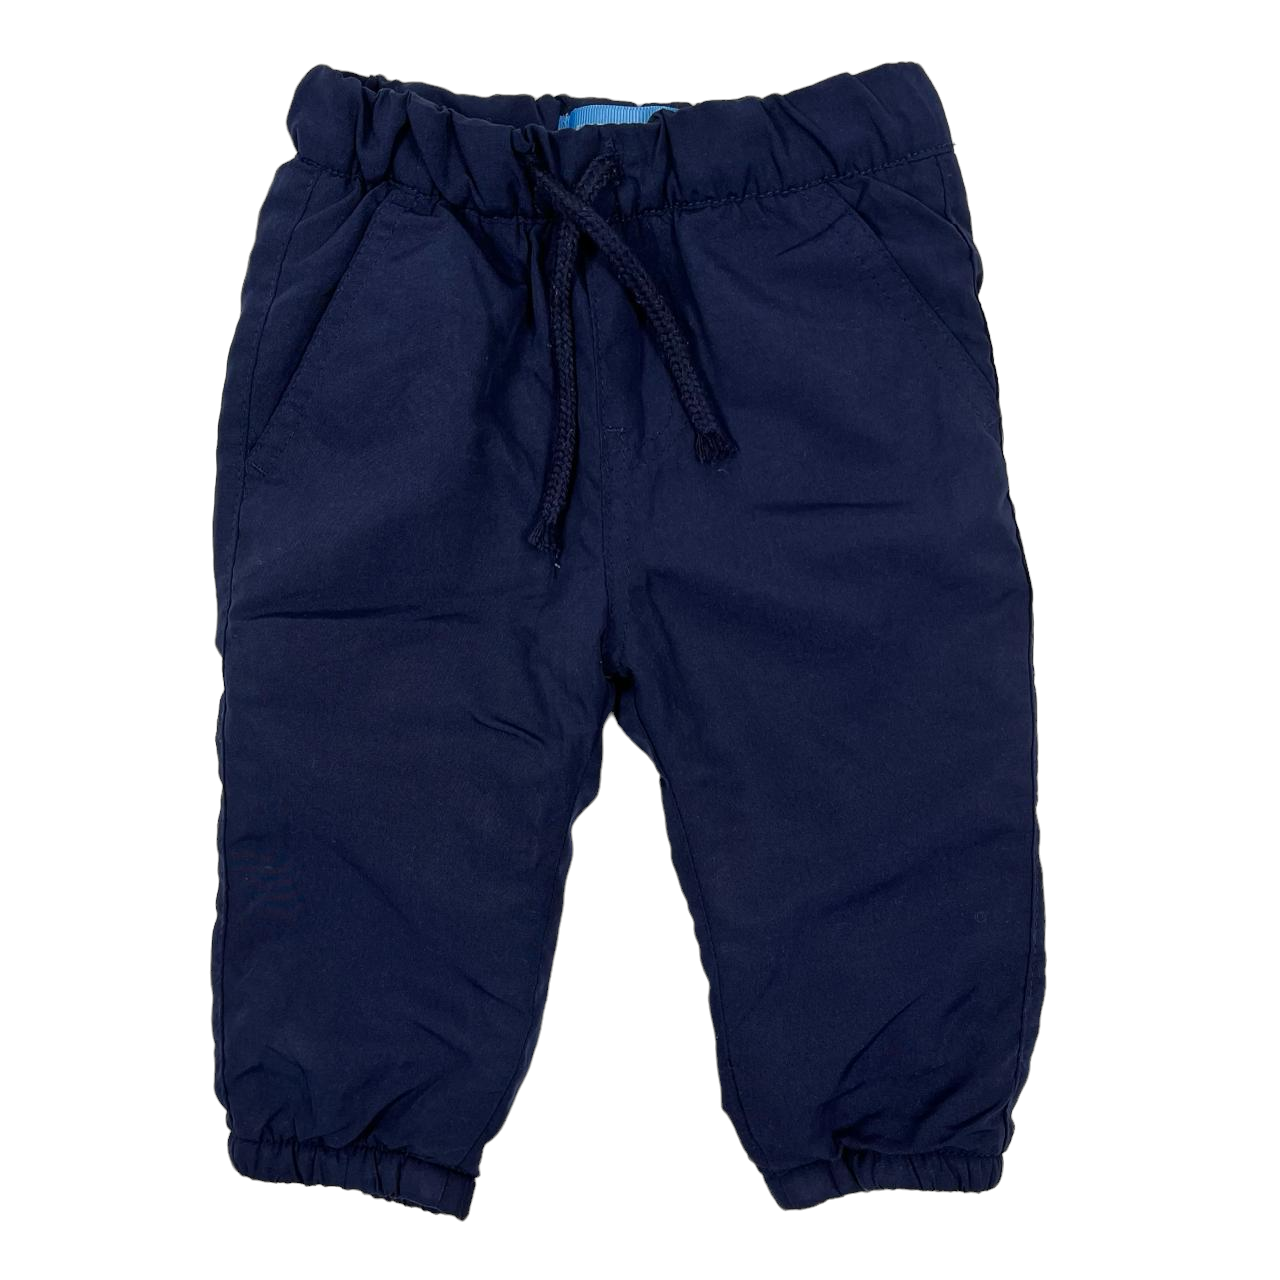 Pantalon forrado azul marino termico con puños y cordon